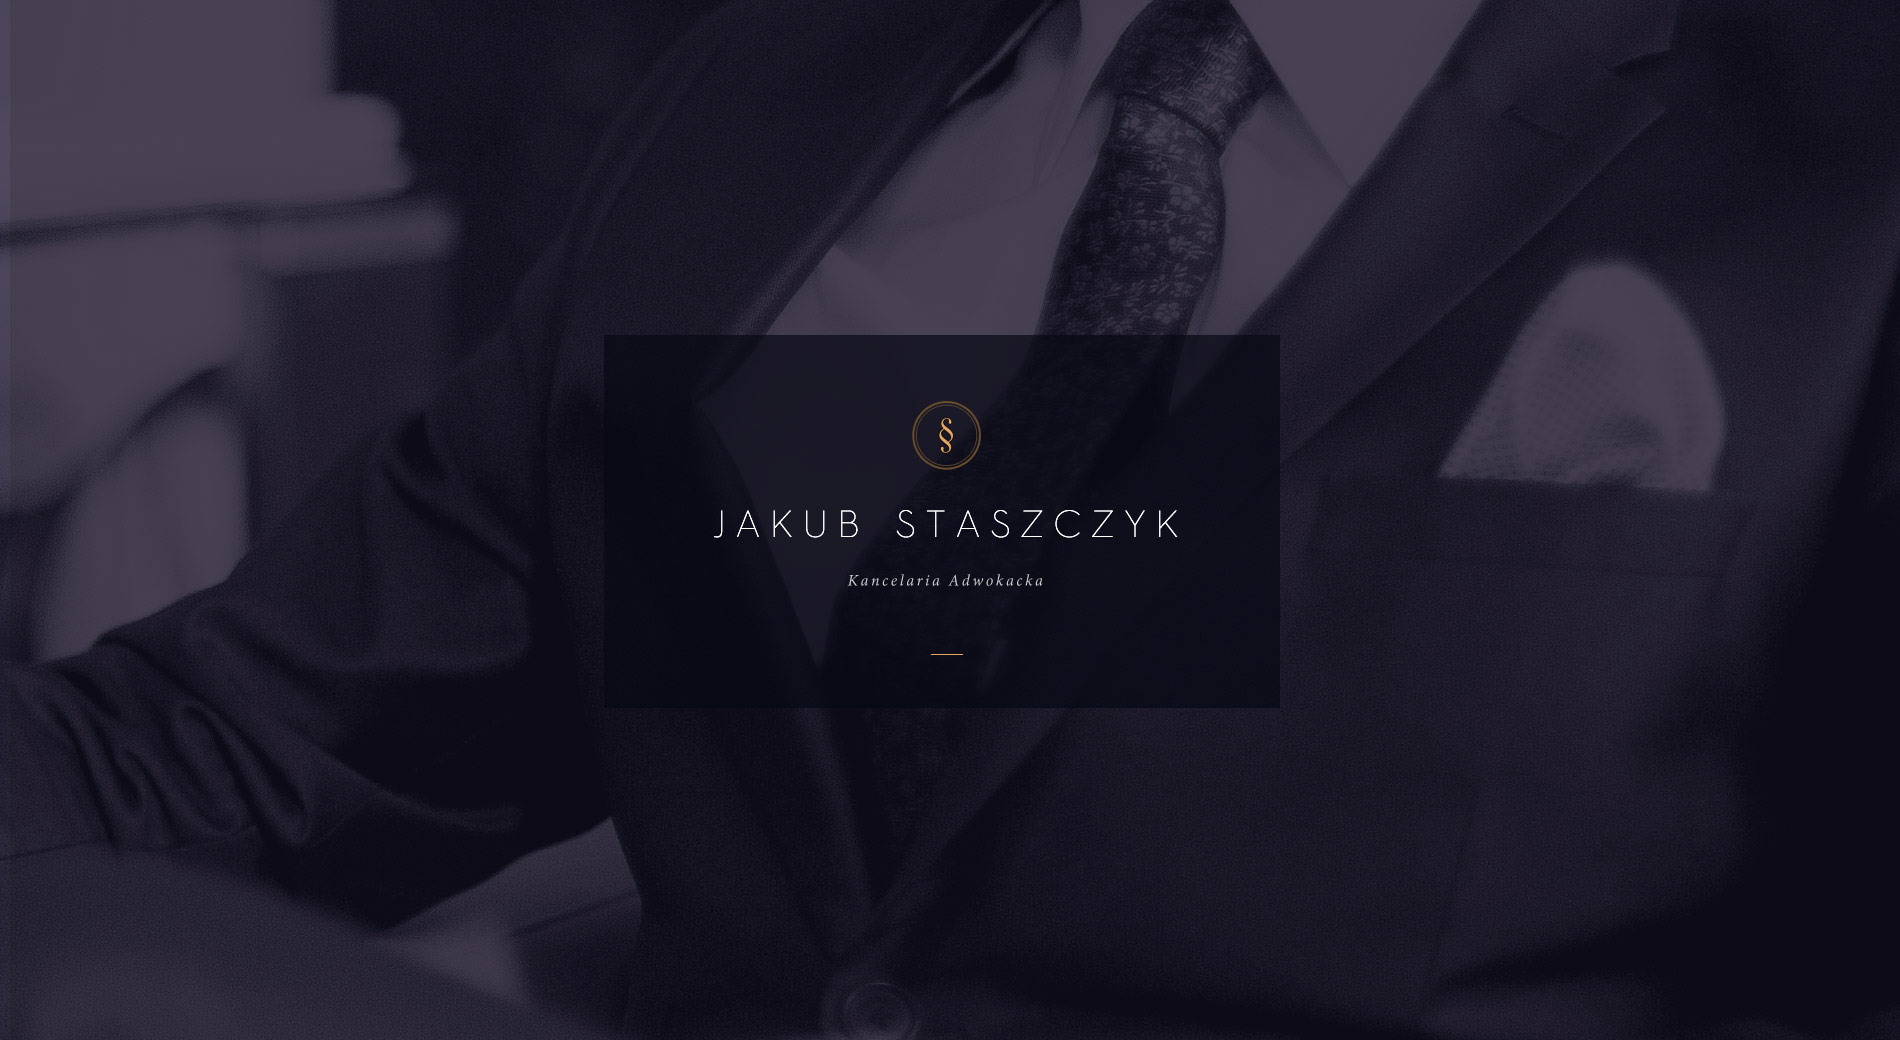 Jakub Staszczyk, Attorney at Law